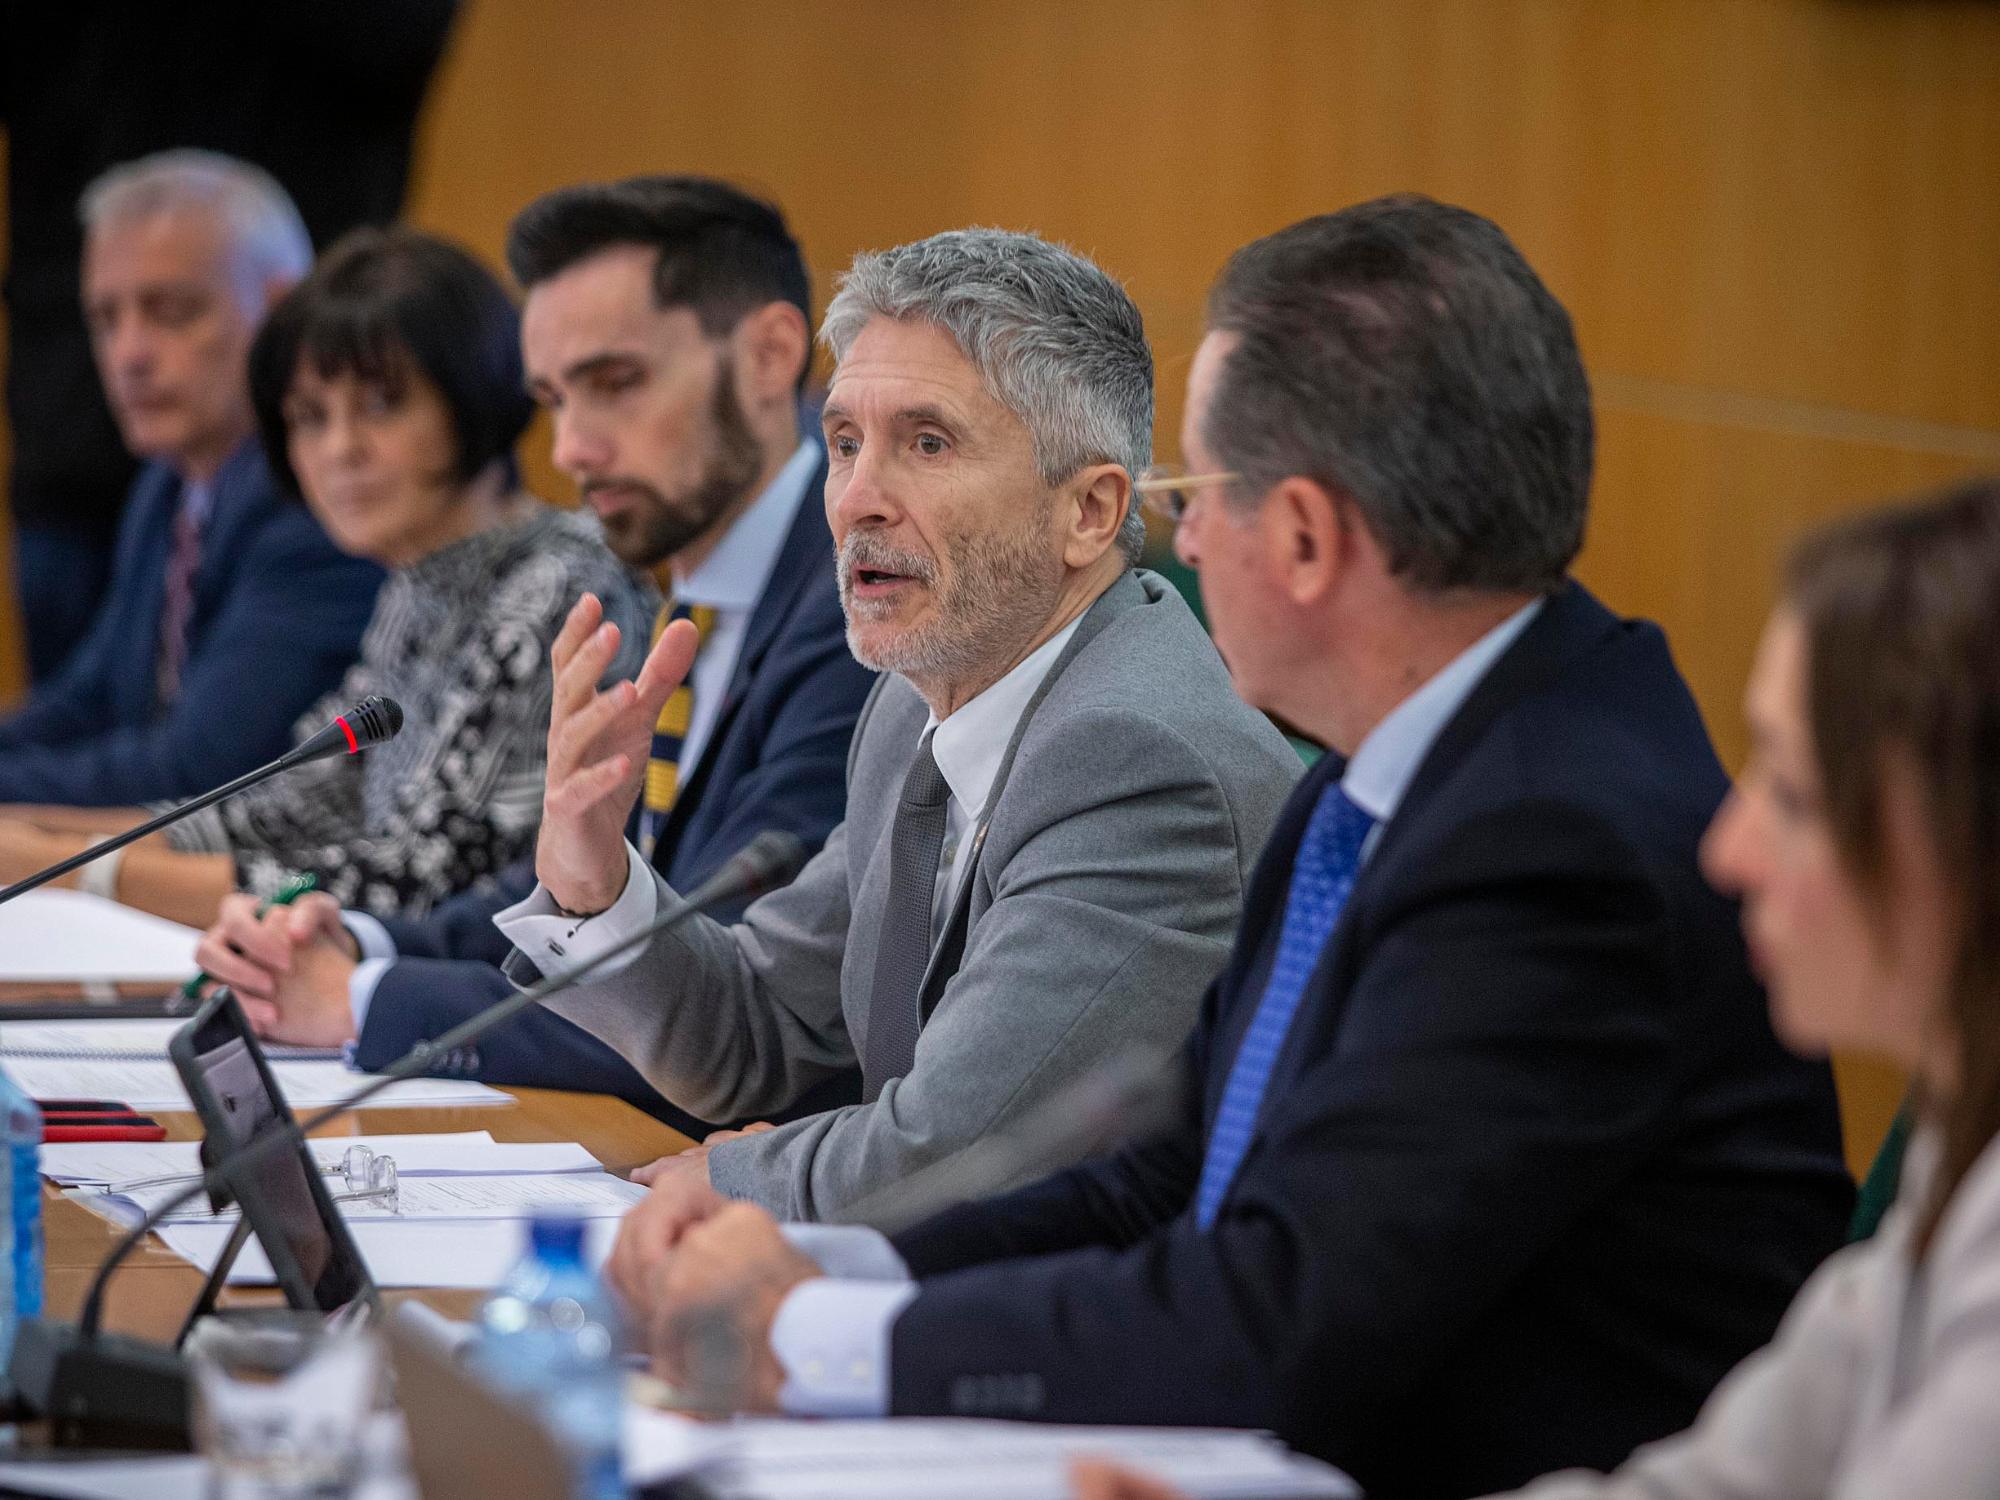 El Ministro del Interior, Fernando Grande-Marlaska, en la mesa junto al Secretario de Estado,  la Subsecretaria de Interior y otras personalidades